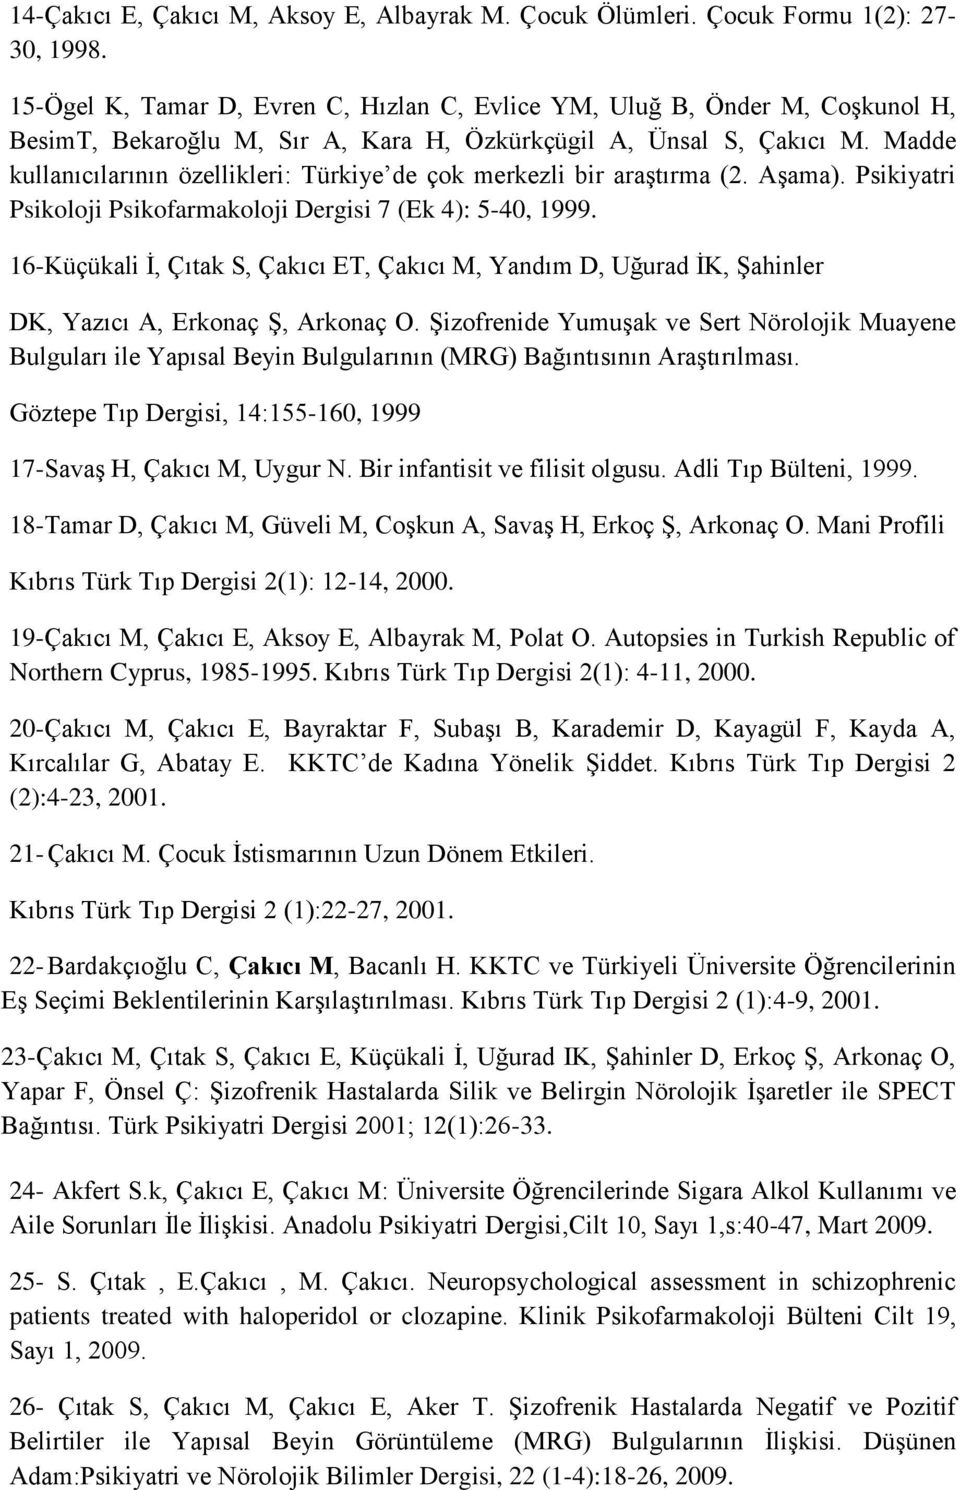 Madde kullanıcılarının özellikleri: Türkiye de çok merkezli bir araştırma (2. Aşama). Psikiyatri Psikoloji Psikofarmakoloji Dergisi 7 (Ek 4): 5-40, 1999.